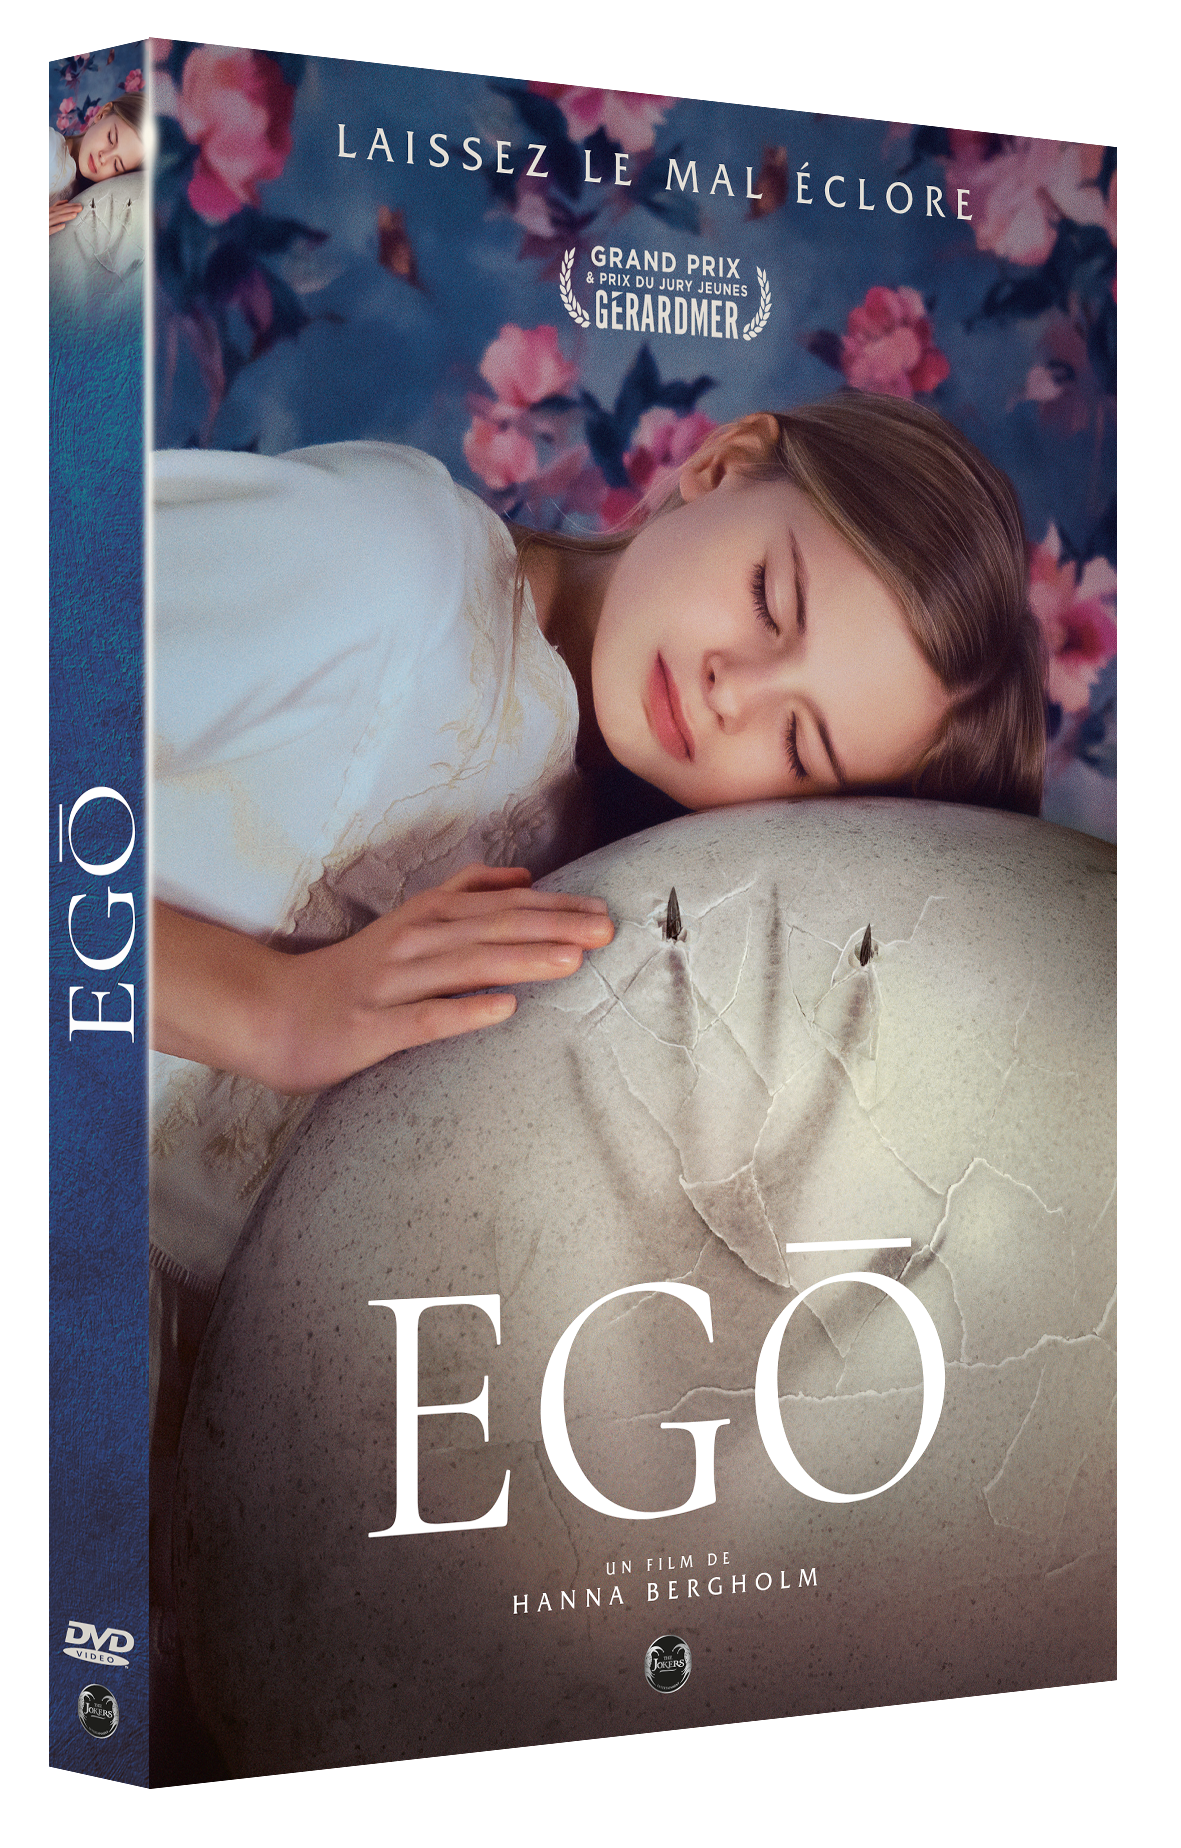 DVD "Ego"